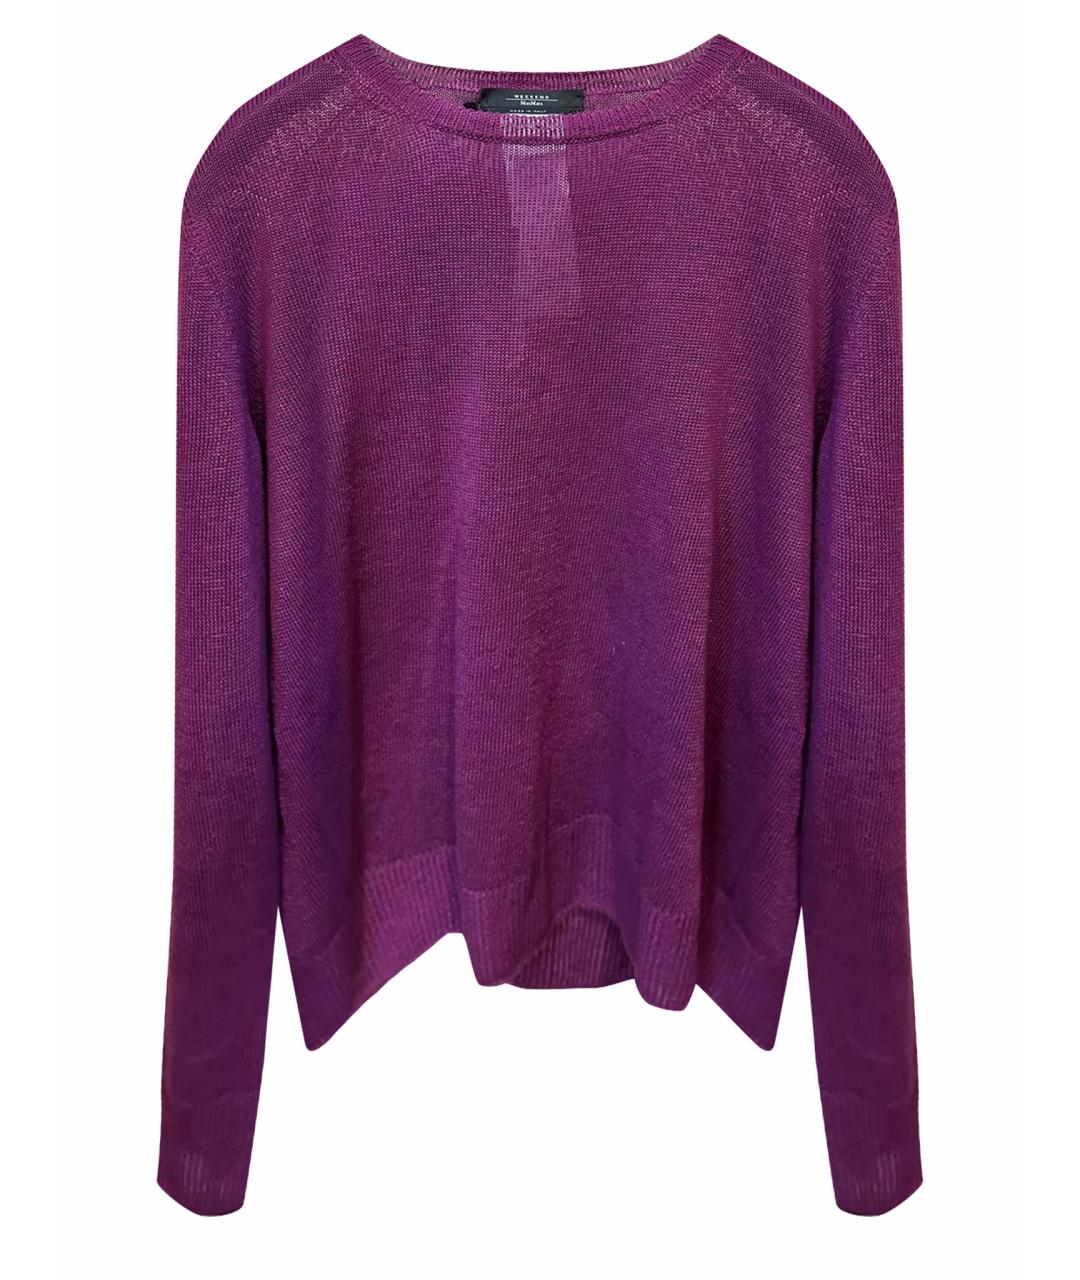 WEEKEND MAX MARA Фиолетовый льняной джемпер / свитер, фото 1